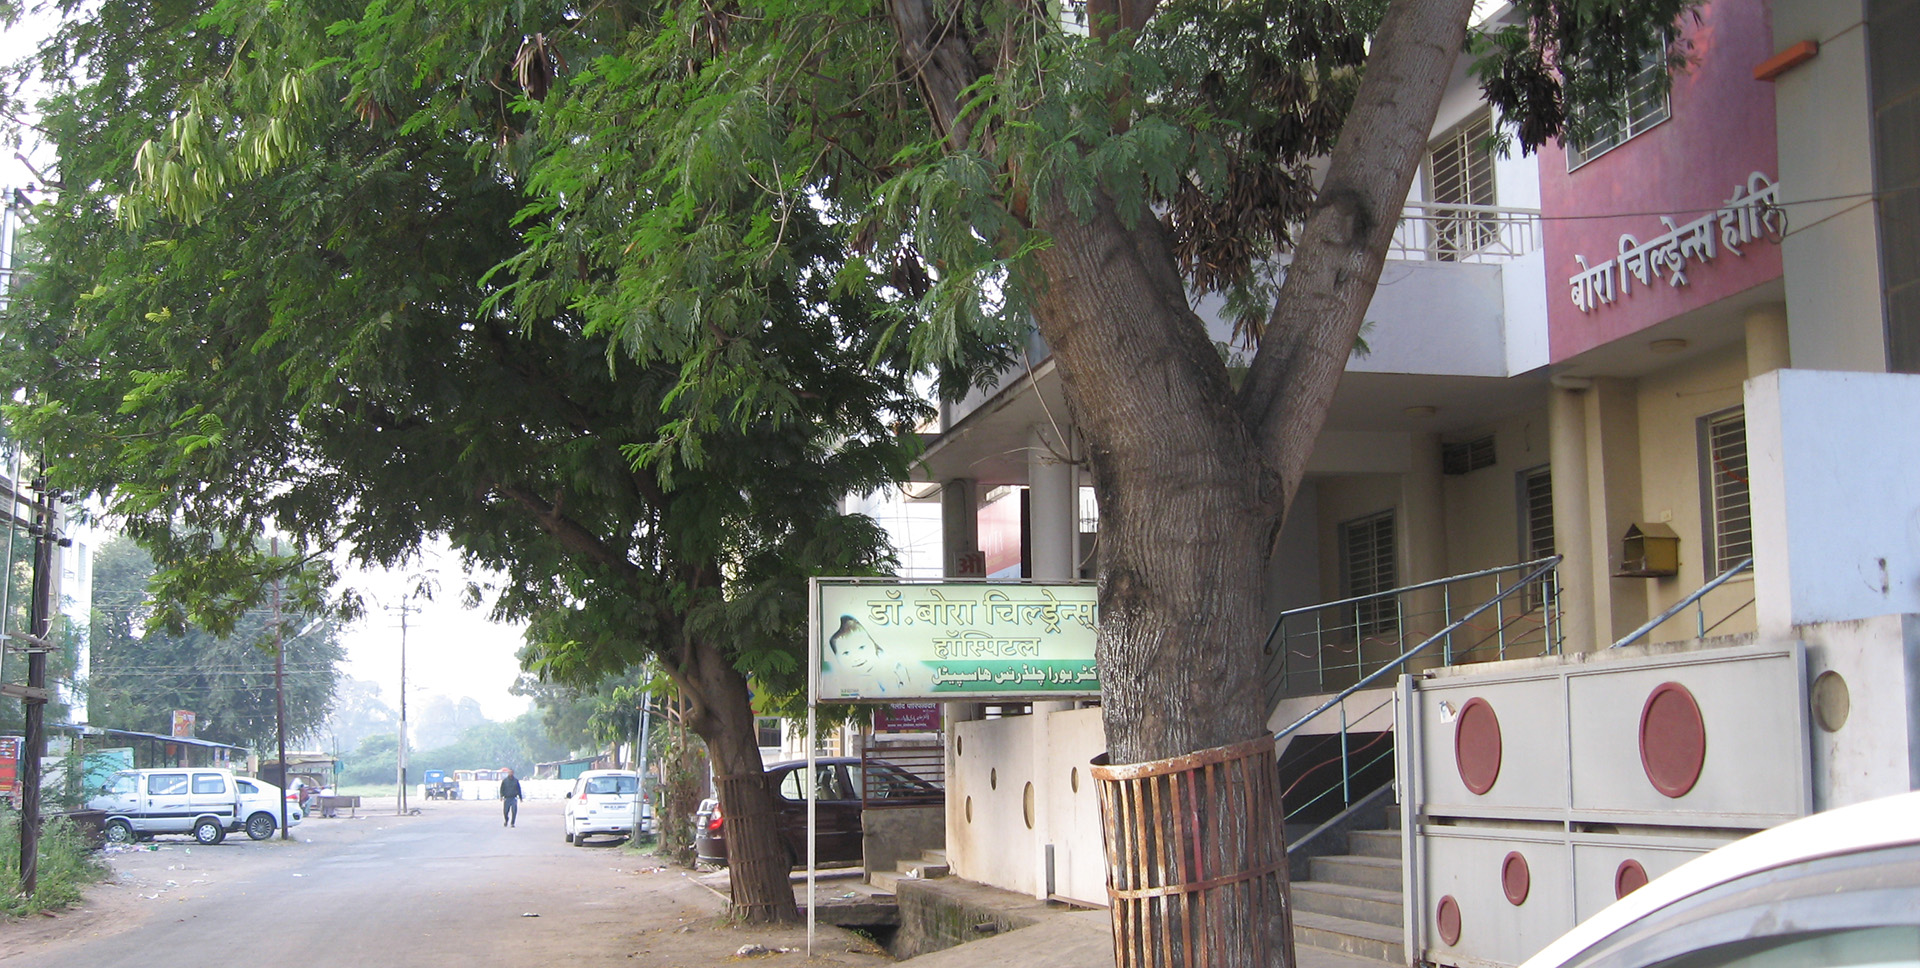 Bora Hospital